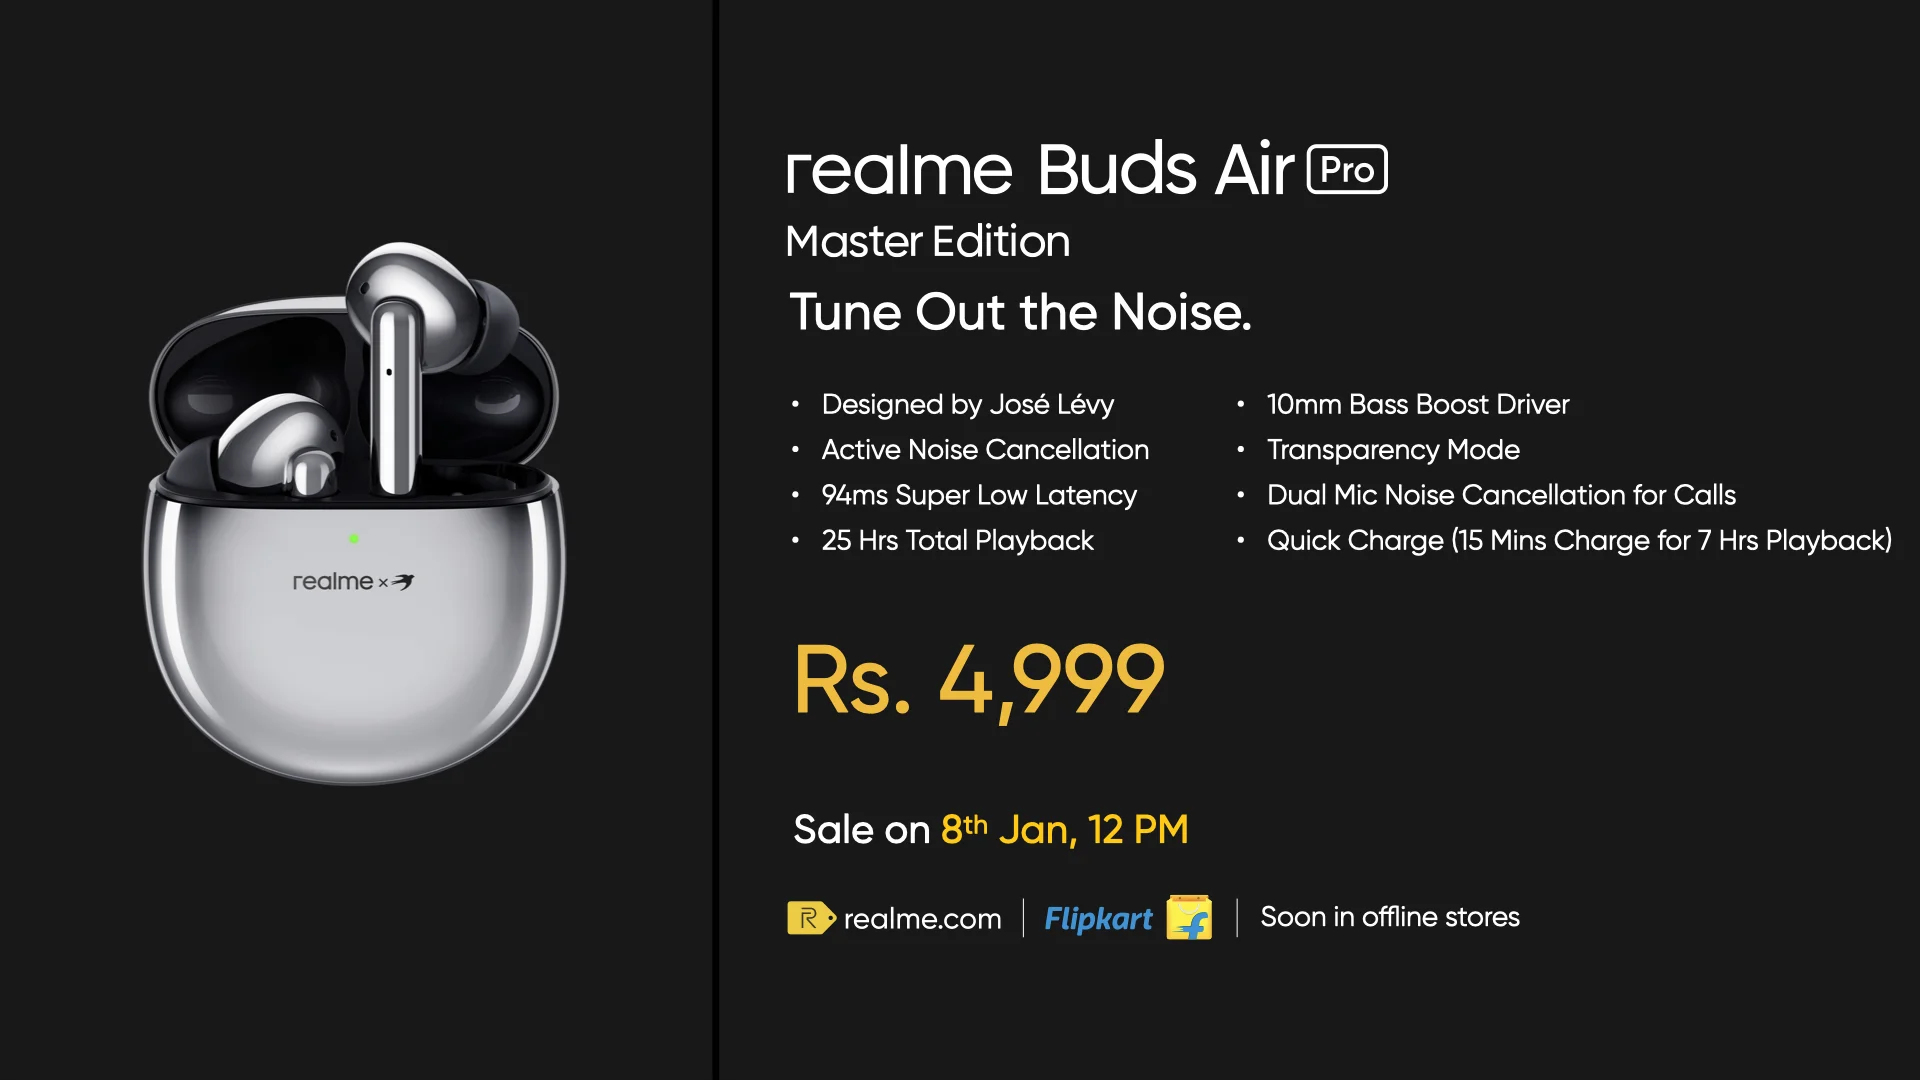 Представлены Realme Buds Air Pro Master Edition — «космические» наушники с активным шумоподавлением - фото 1